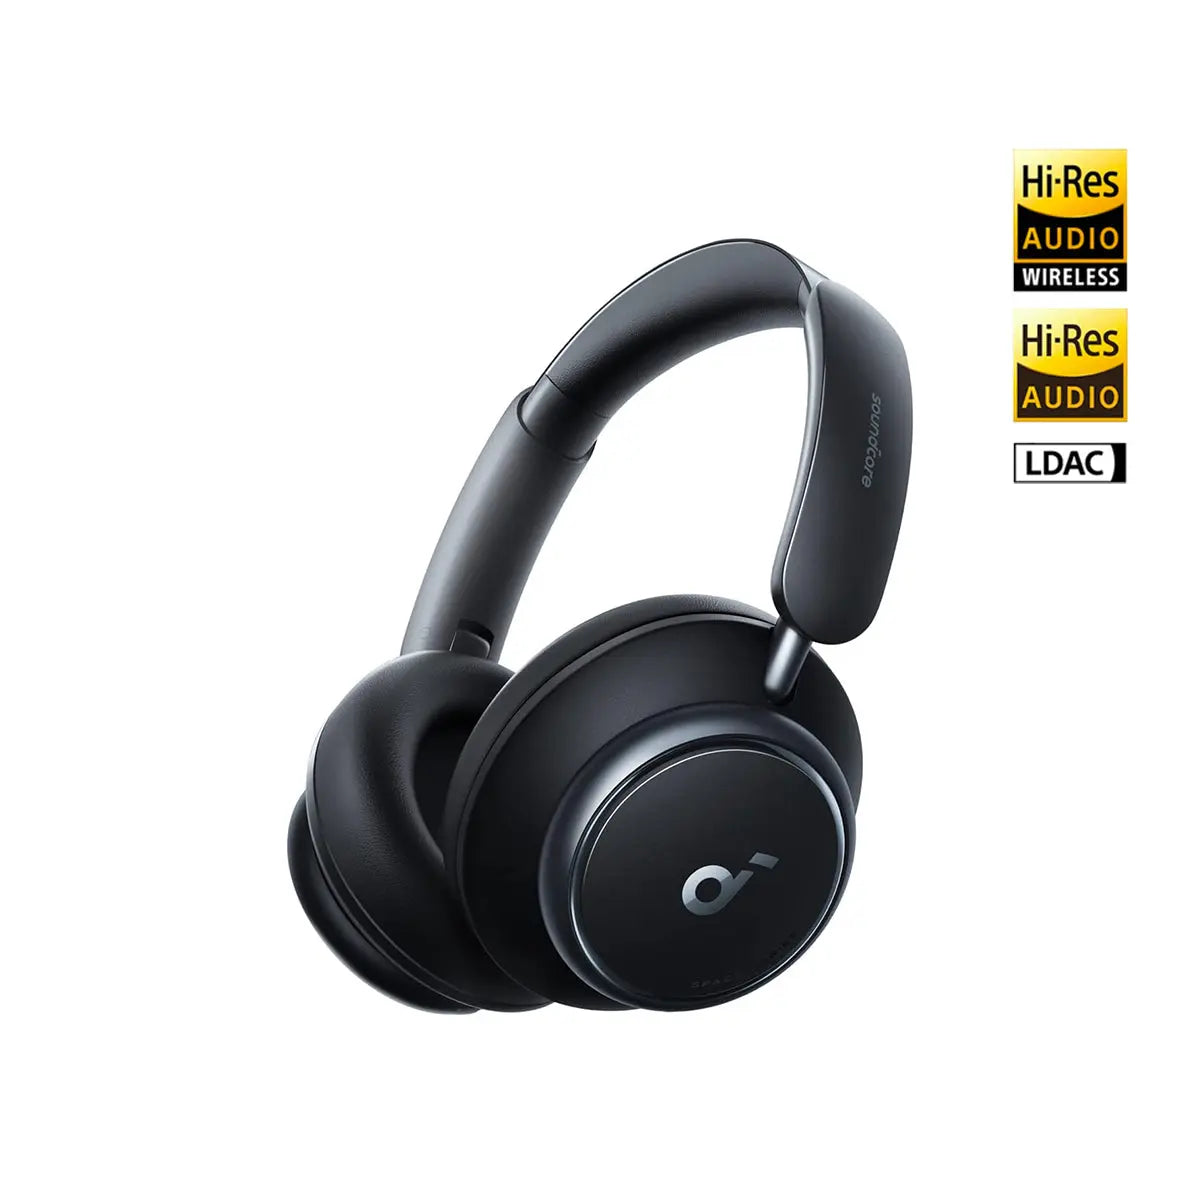 NOISE CANCEL SOUND TEST Soundcore Anker Life Q30 Headphones 